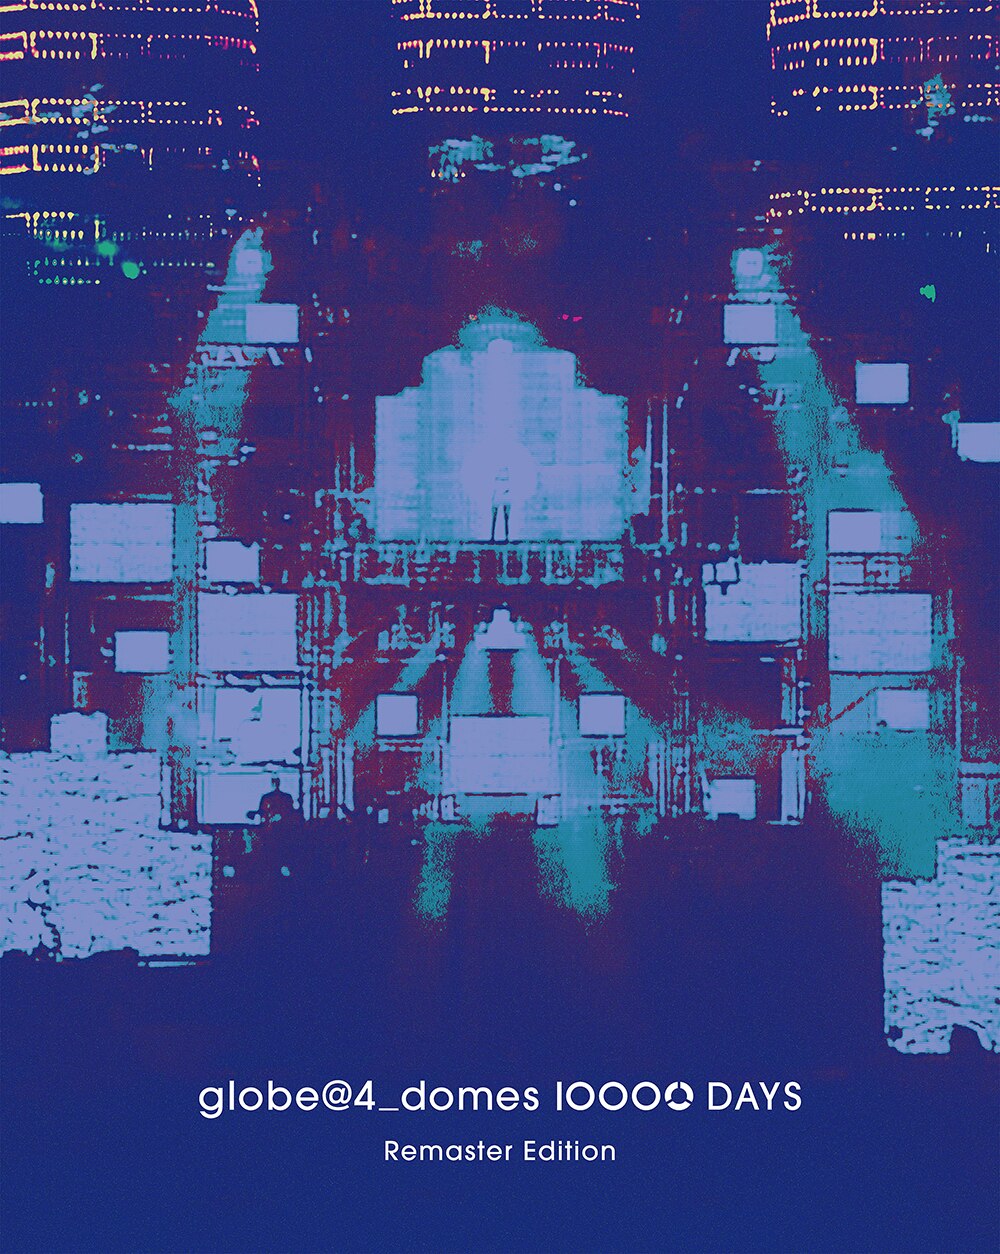 2023.8.9 Release、globe Blu-ray作品「globe＠4_domes 10000 DAYS Remaster  Edition」の初回限定盤特典としてNeSTREAM LIVEのシリアルコードが封入されます。 - NeSTREAM LIVE  -次世代の配信技術コーデックに対応した、新しいストリーミングサービス